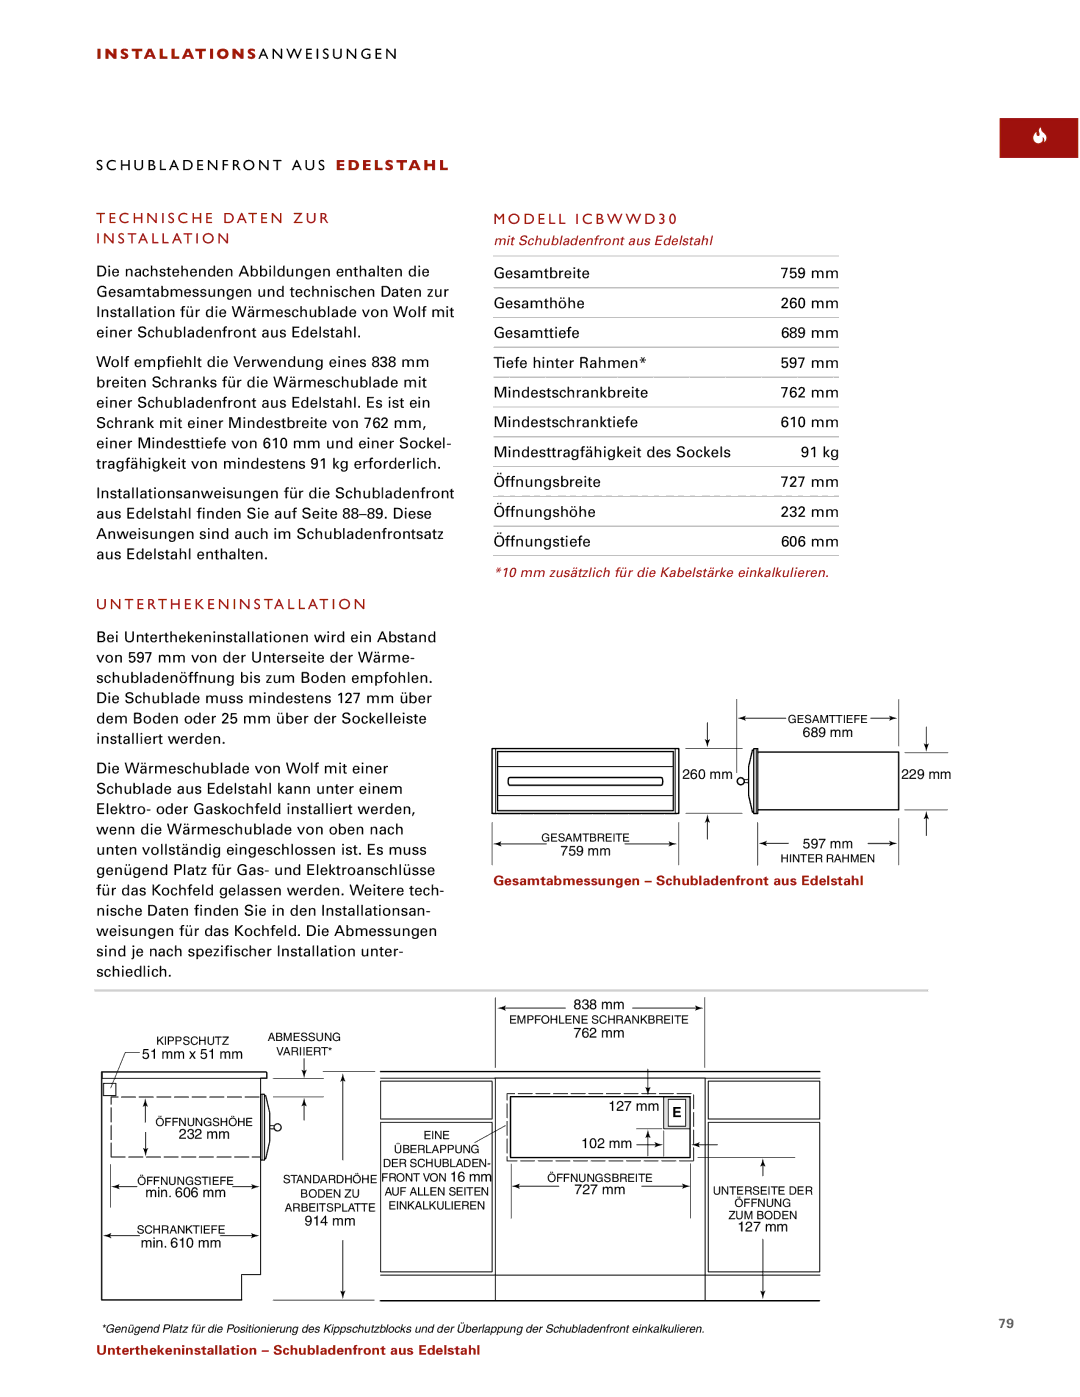 Wolf installation instructions Technische Daten ZUR Installation, Modell ICBWWD30, Unterthekeninstallation 